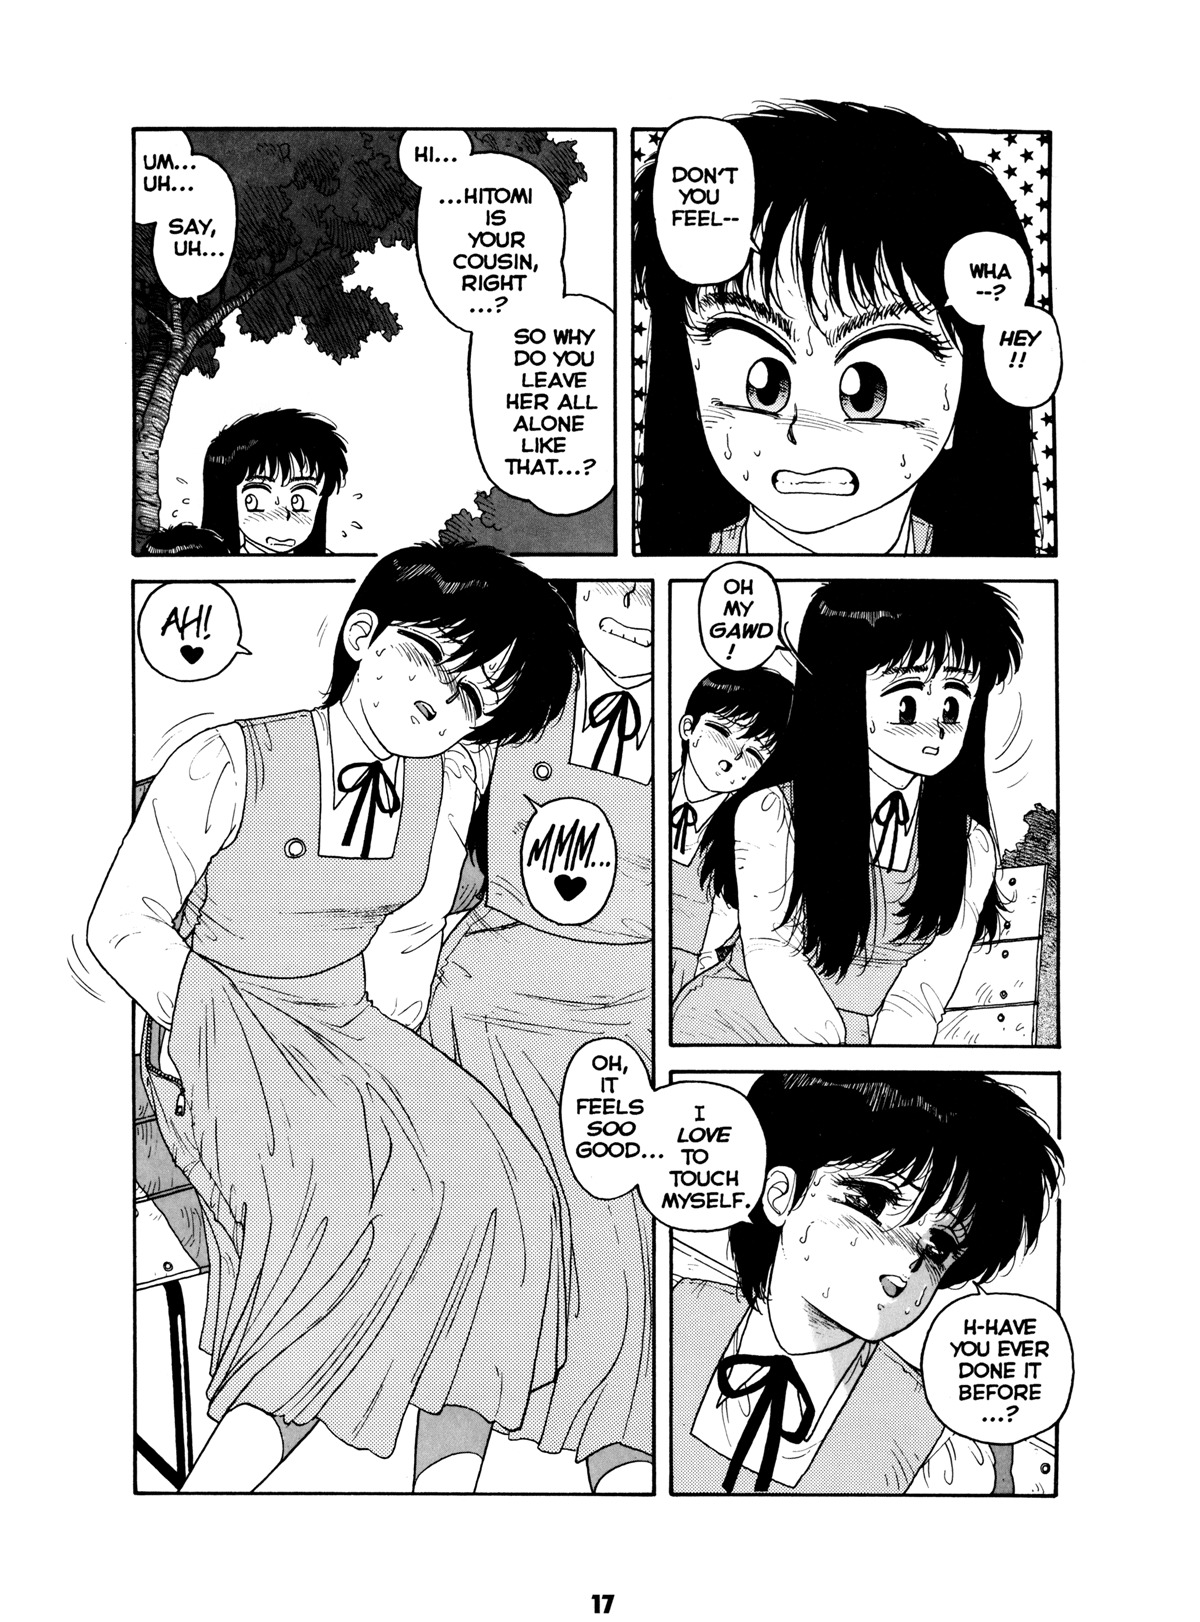 Misty Girl Extreme 16 hentai manga